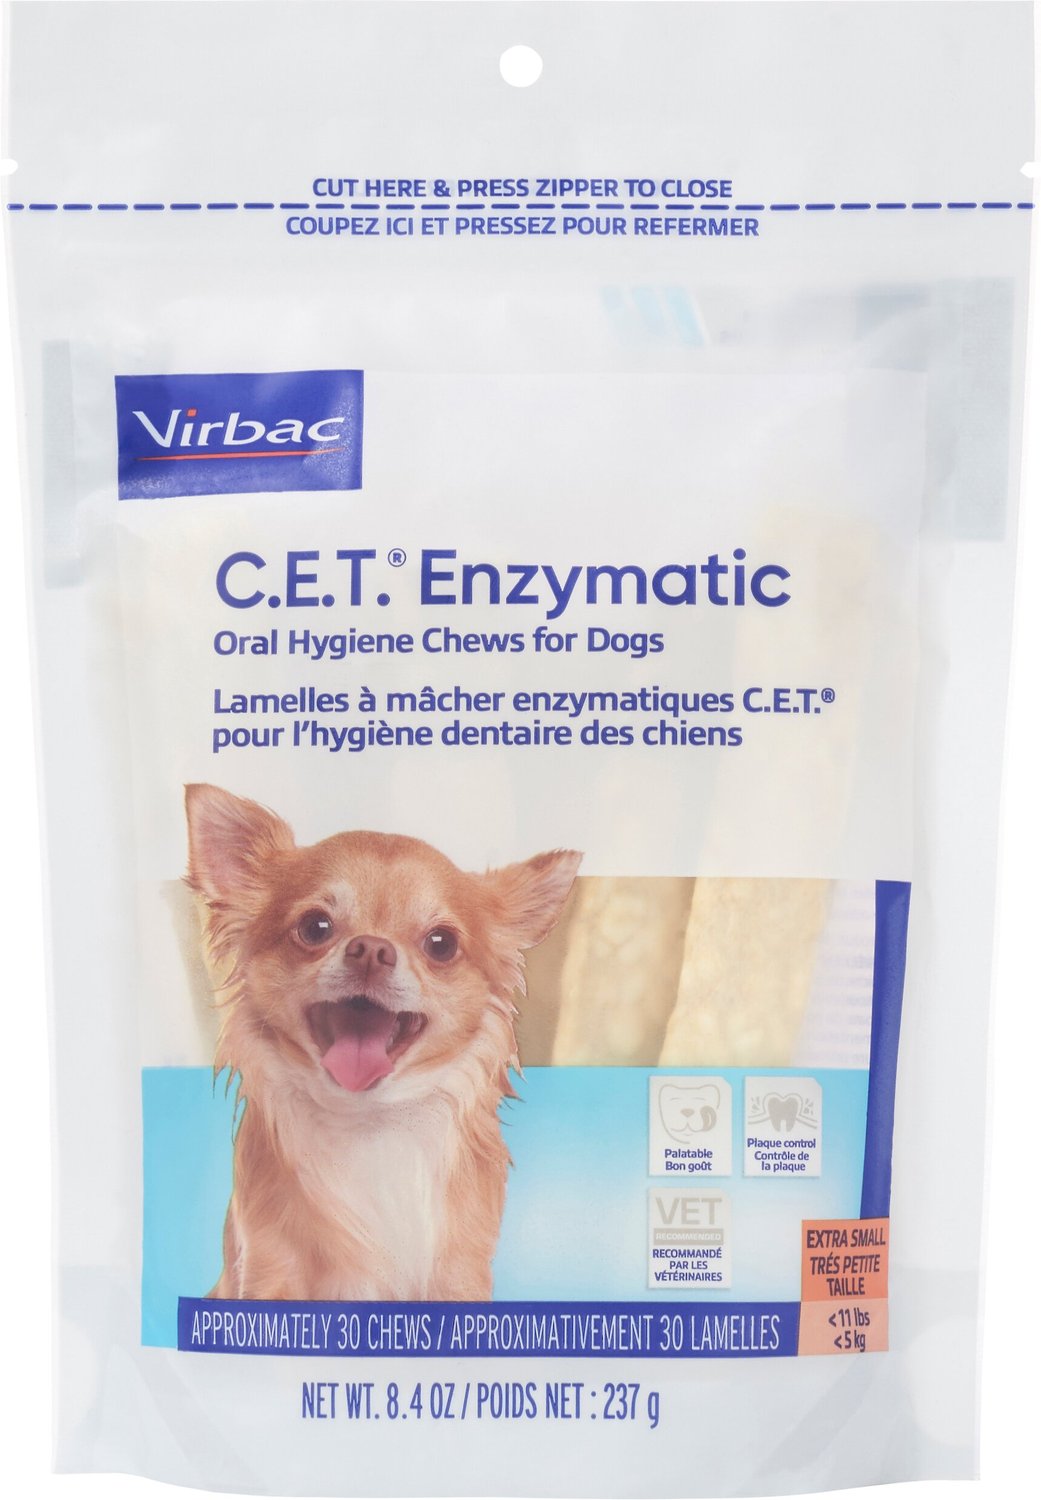 1 Bag Virbac C.E.T 5 Pack 30 Chews Enzymatic Oral Hygiene Chews for Medium Dogs 